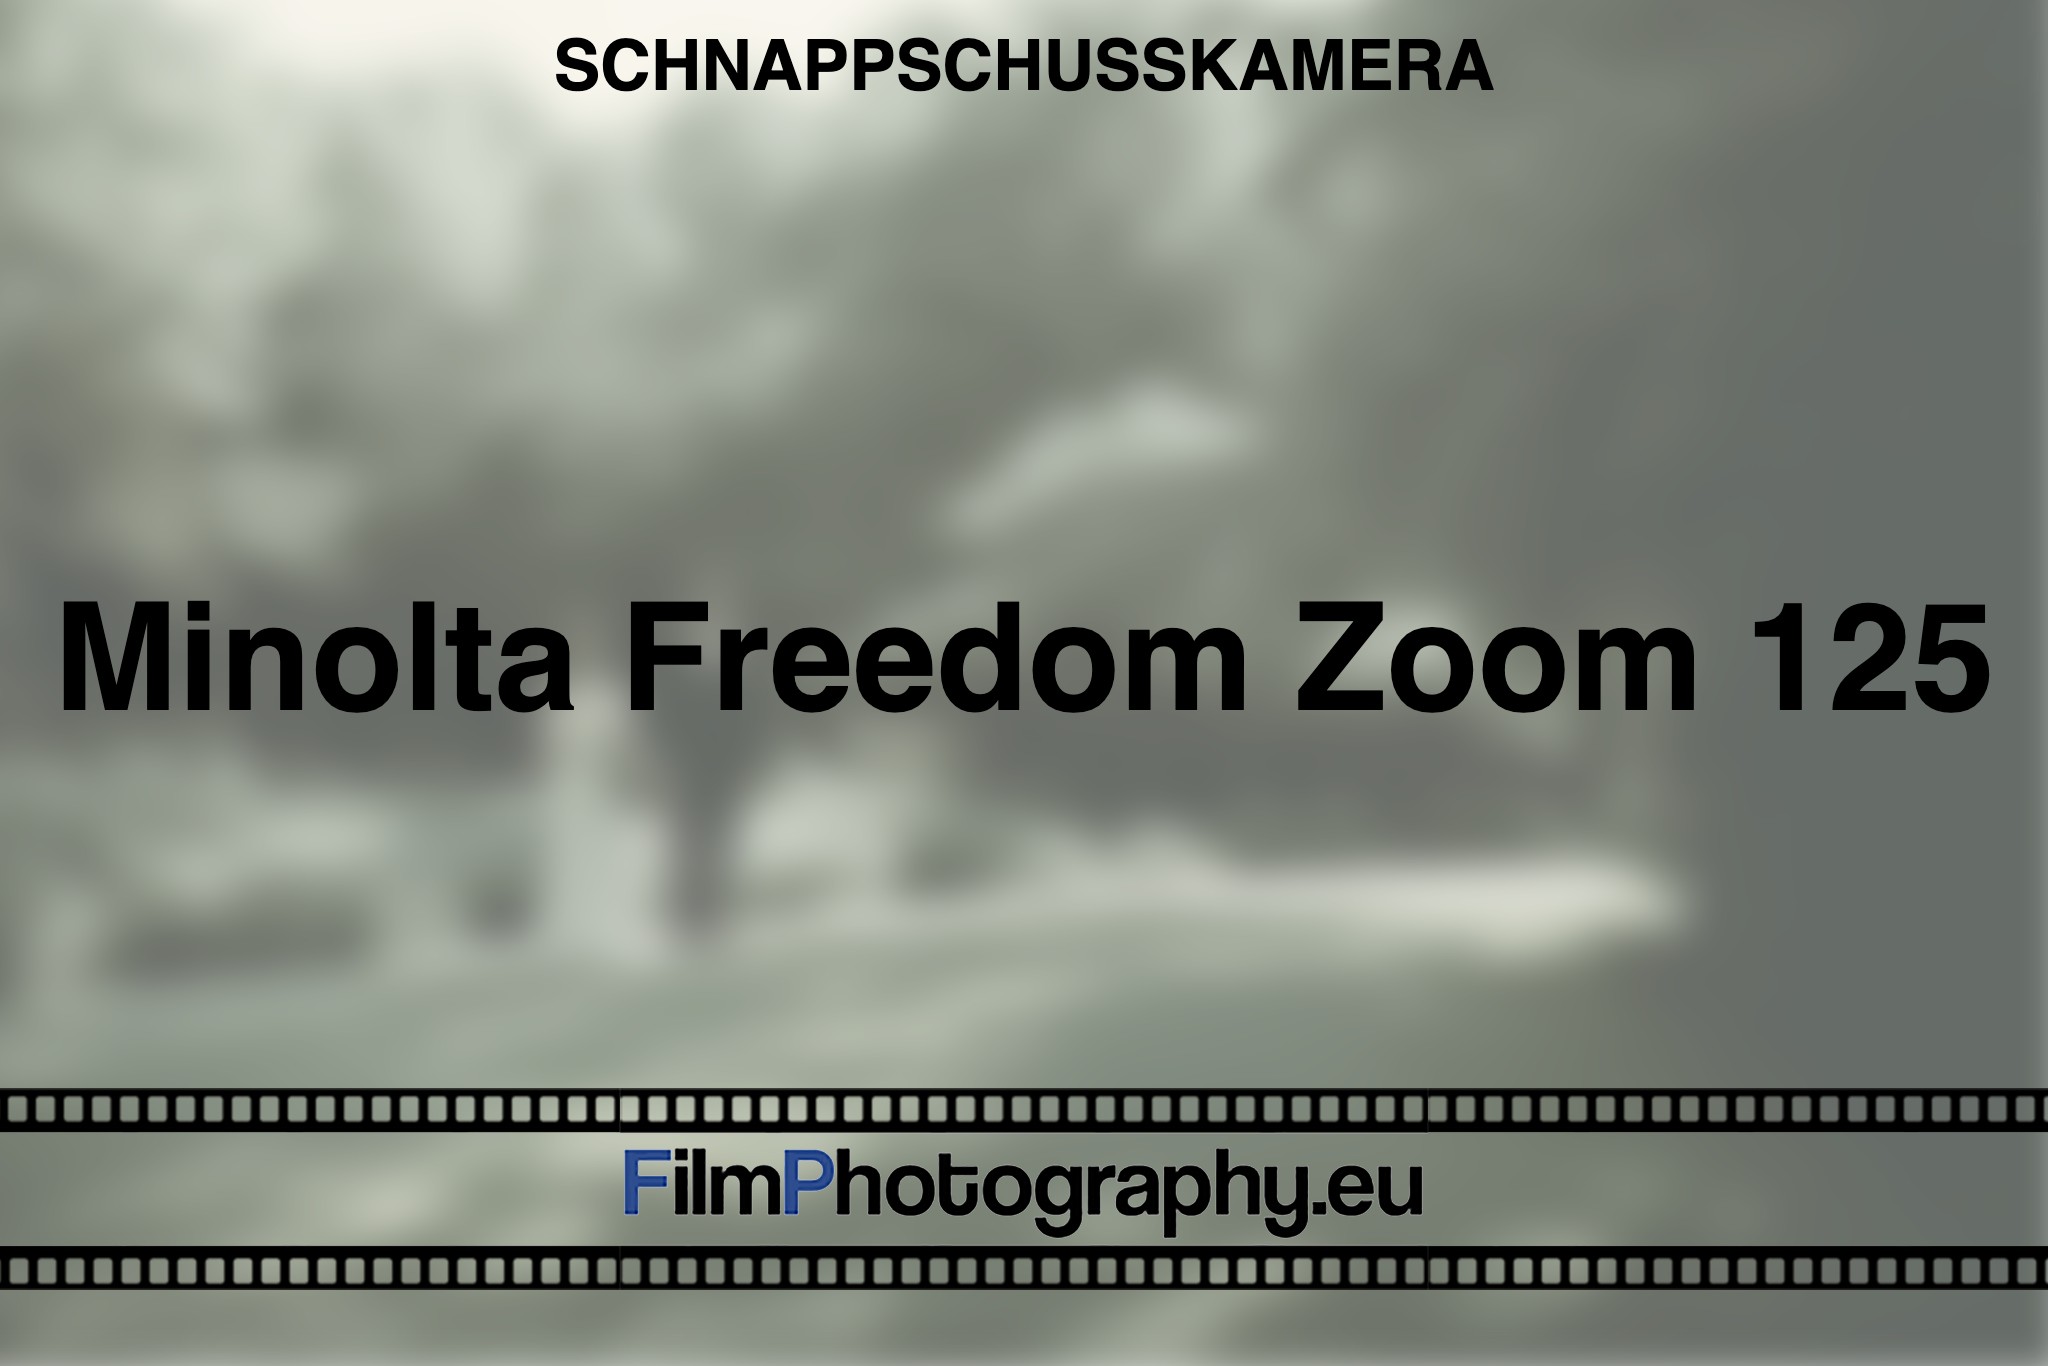 minolta-freedom-zoom-125-schnappschusskamera-bnv